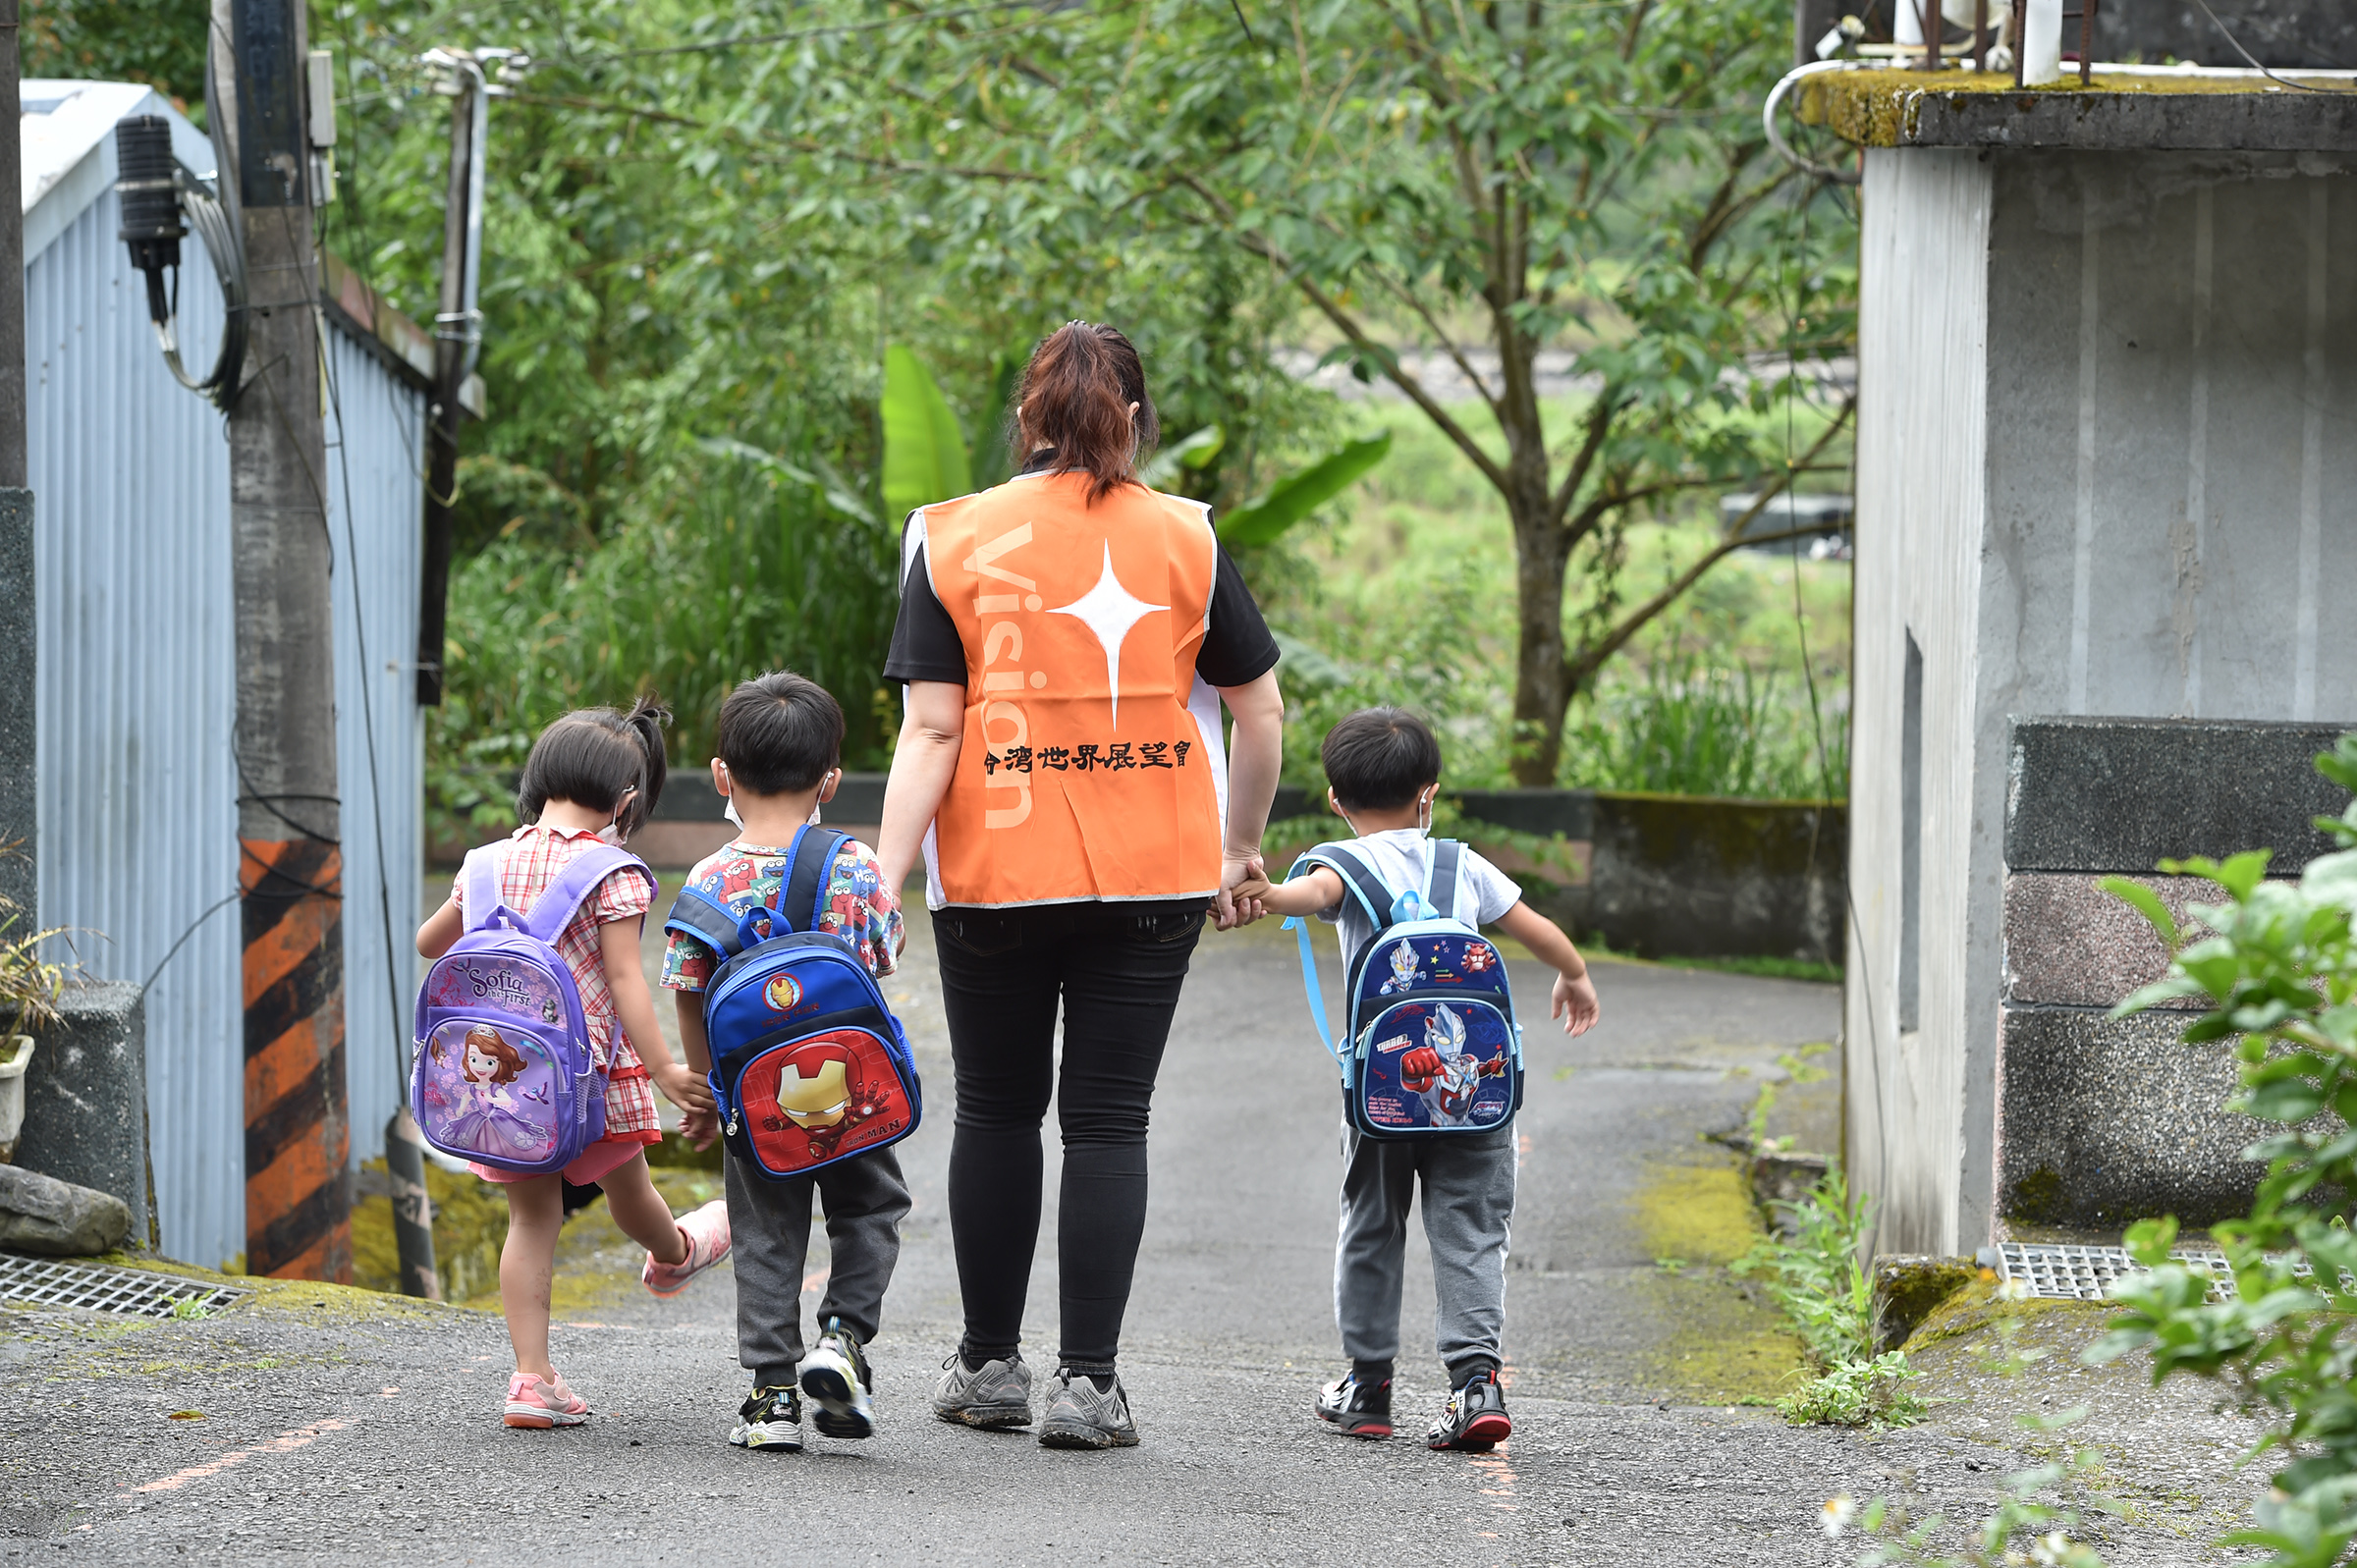 關注國內兒少權利，讓每個孩子都成明日希望。台灣世界展望會調查受助兒少生活，提供更準確的服務